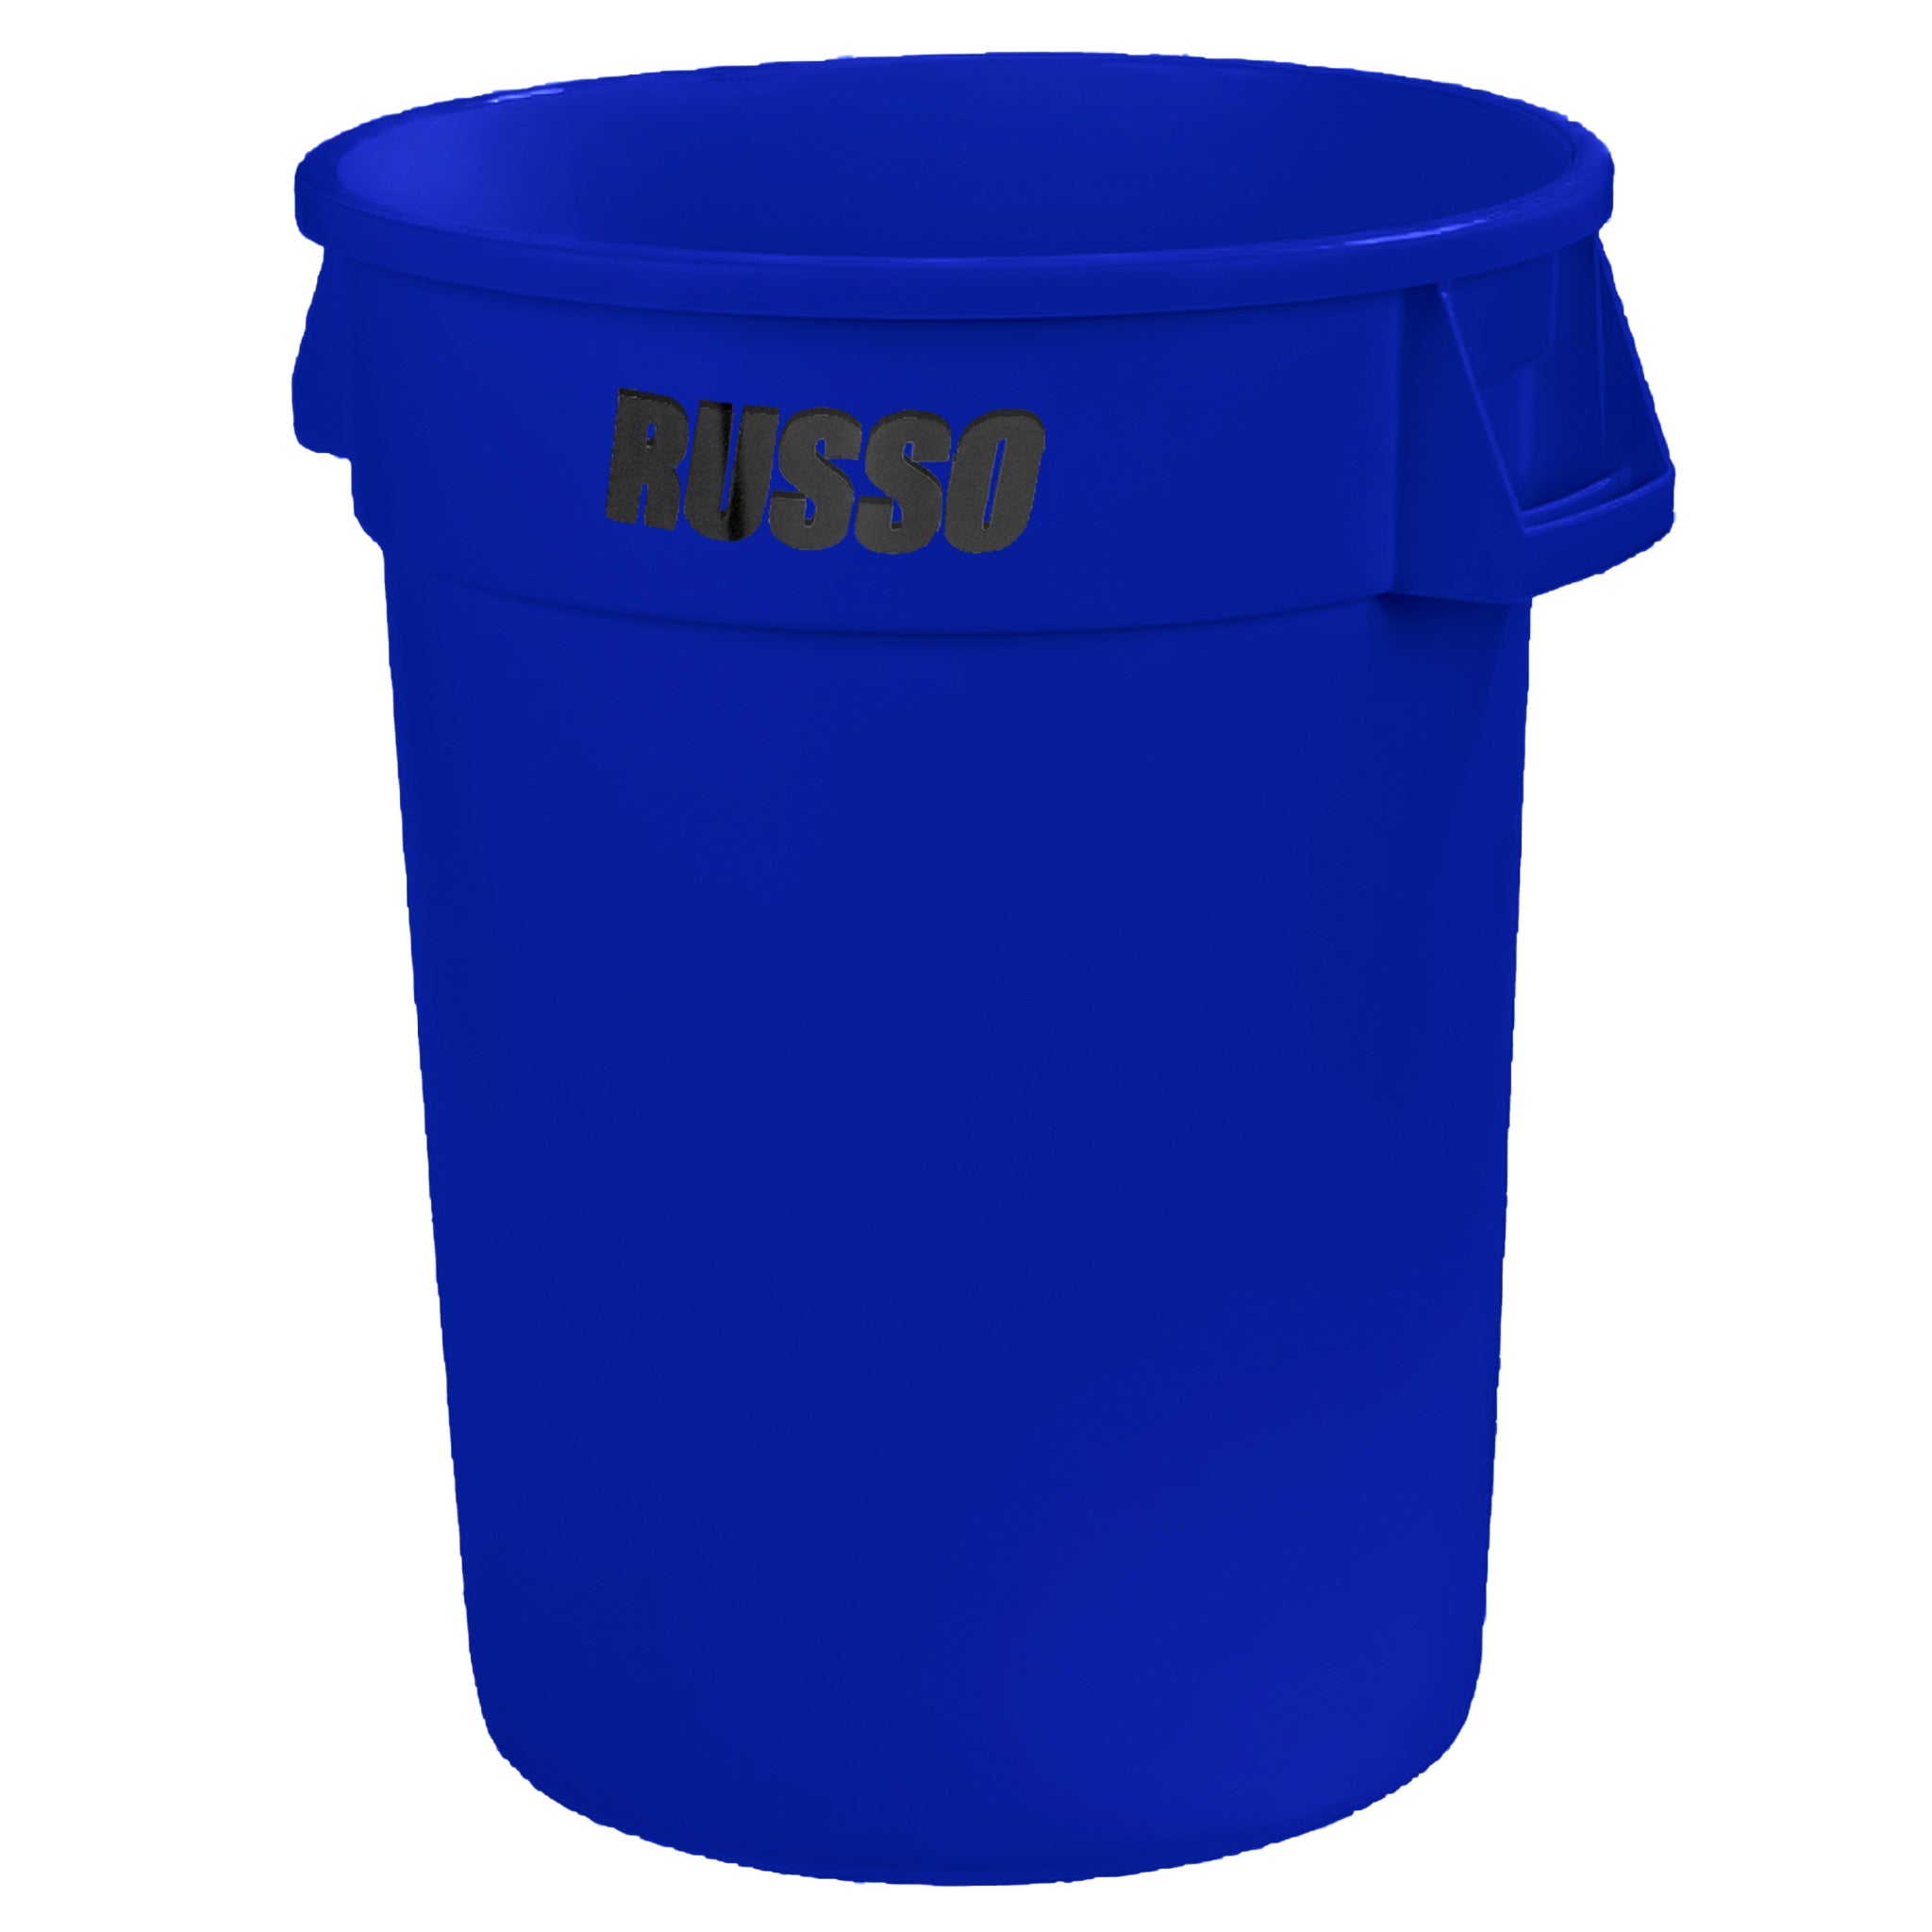 Contenedor de basura Bronco redondo, 32 galones, color azul